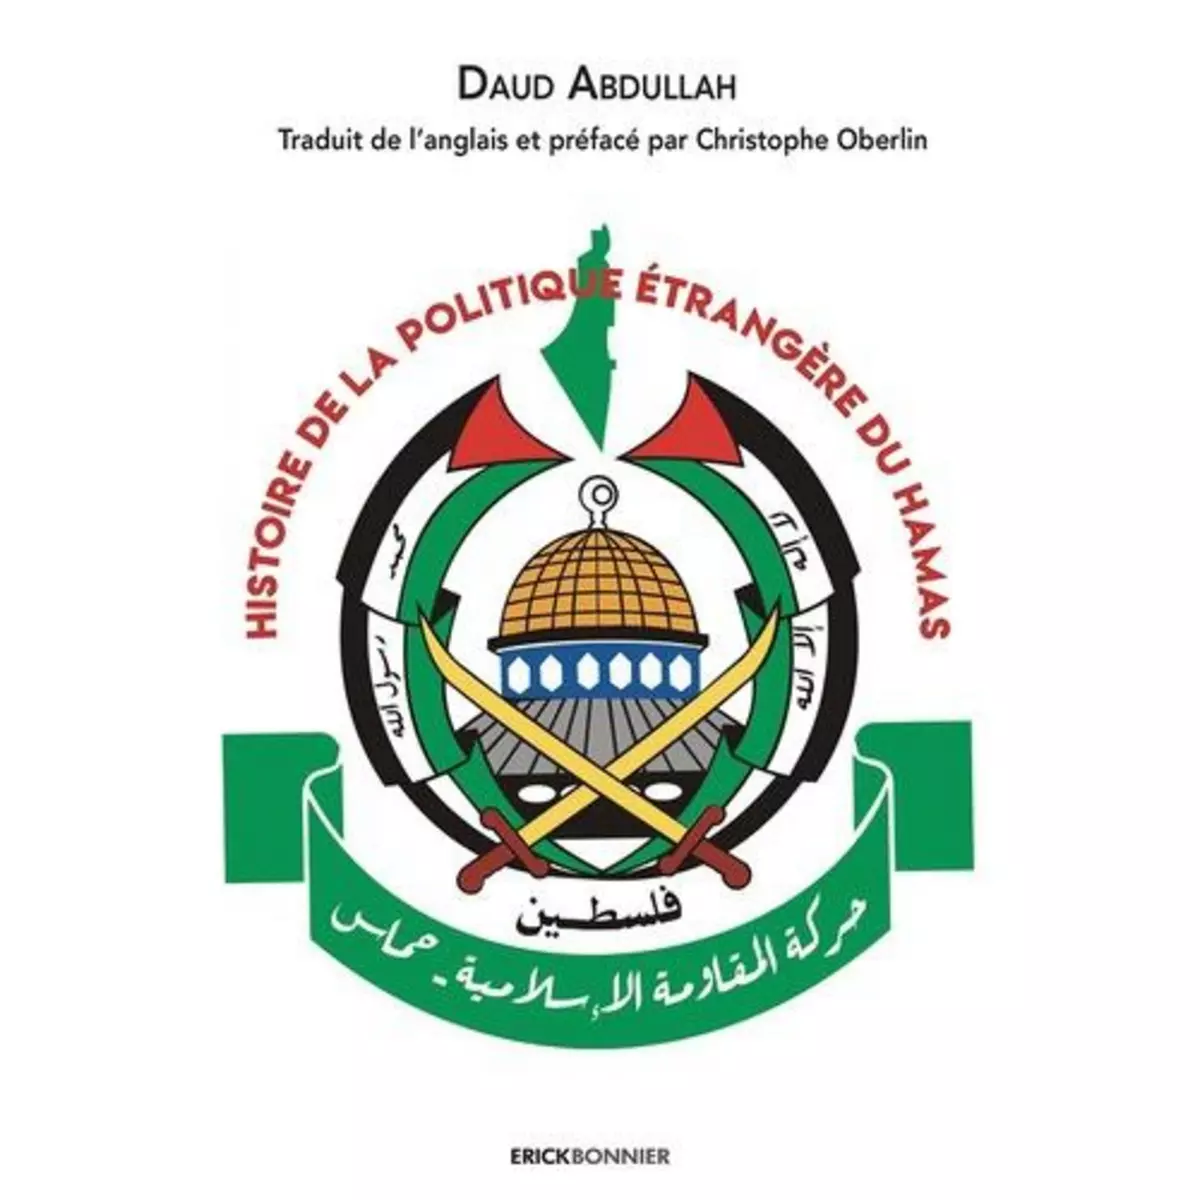  HISTOIRE DE LA POLITIQUE ETRANGERE DU HAMAS, Abdullah Daud